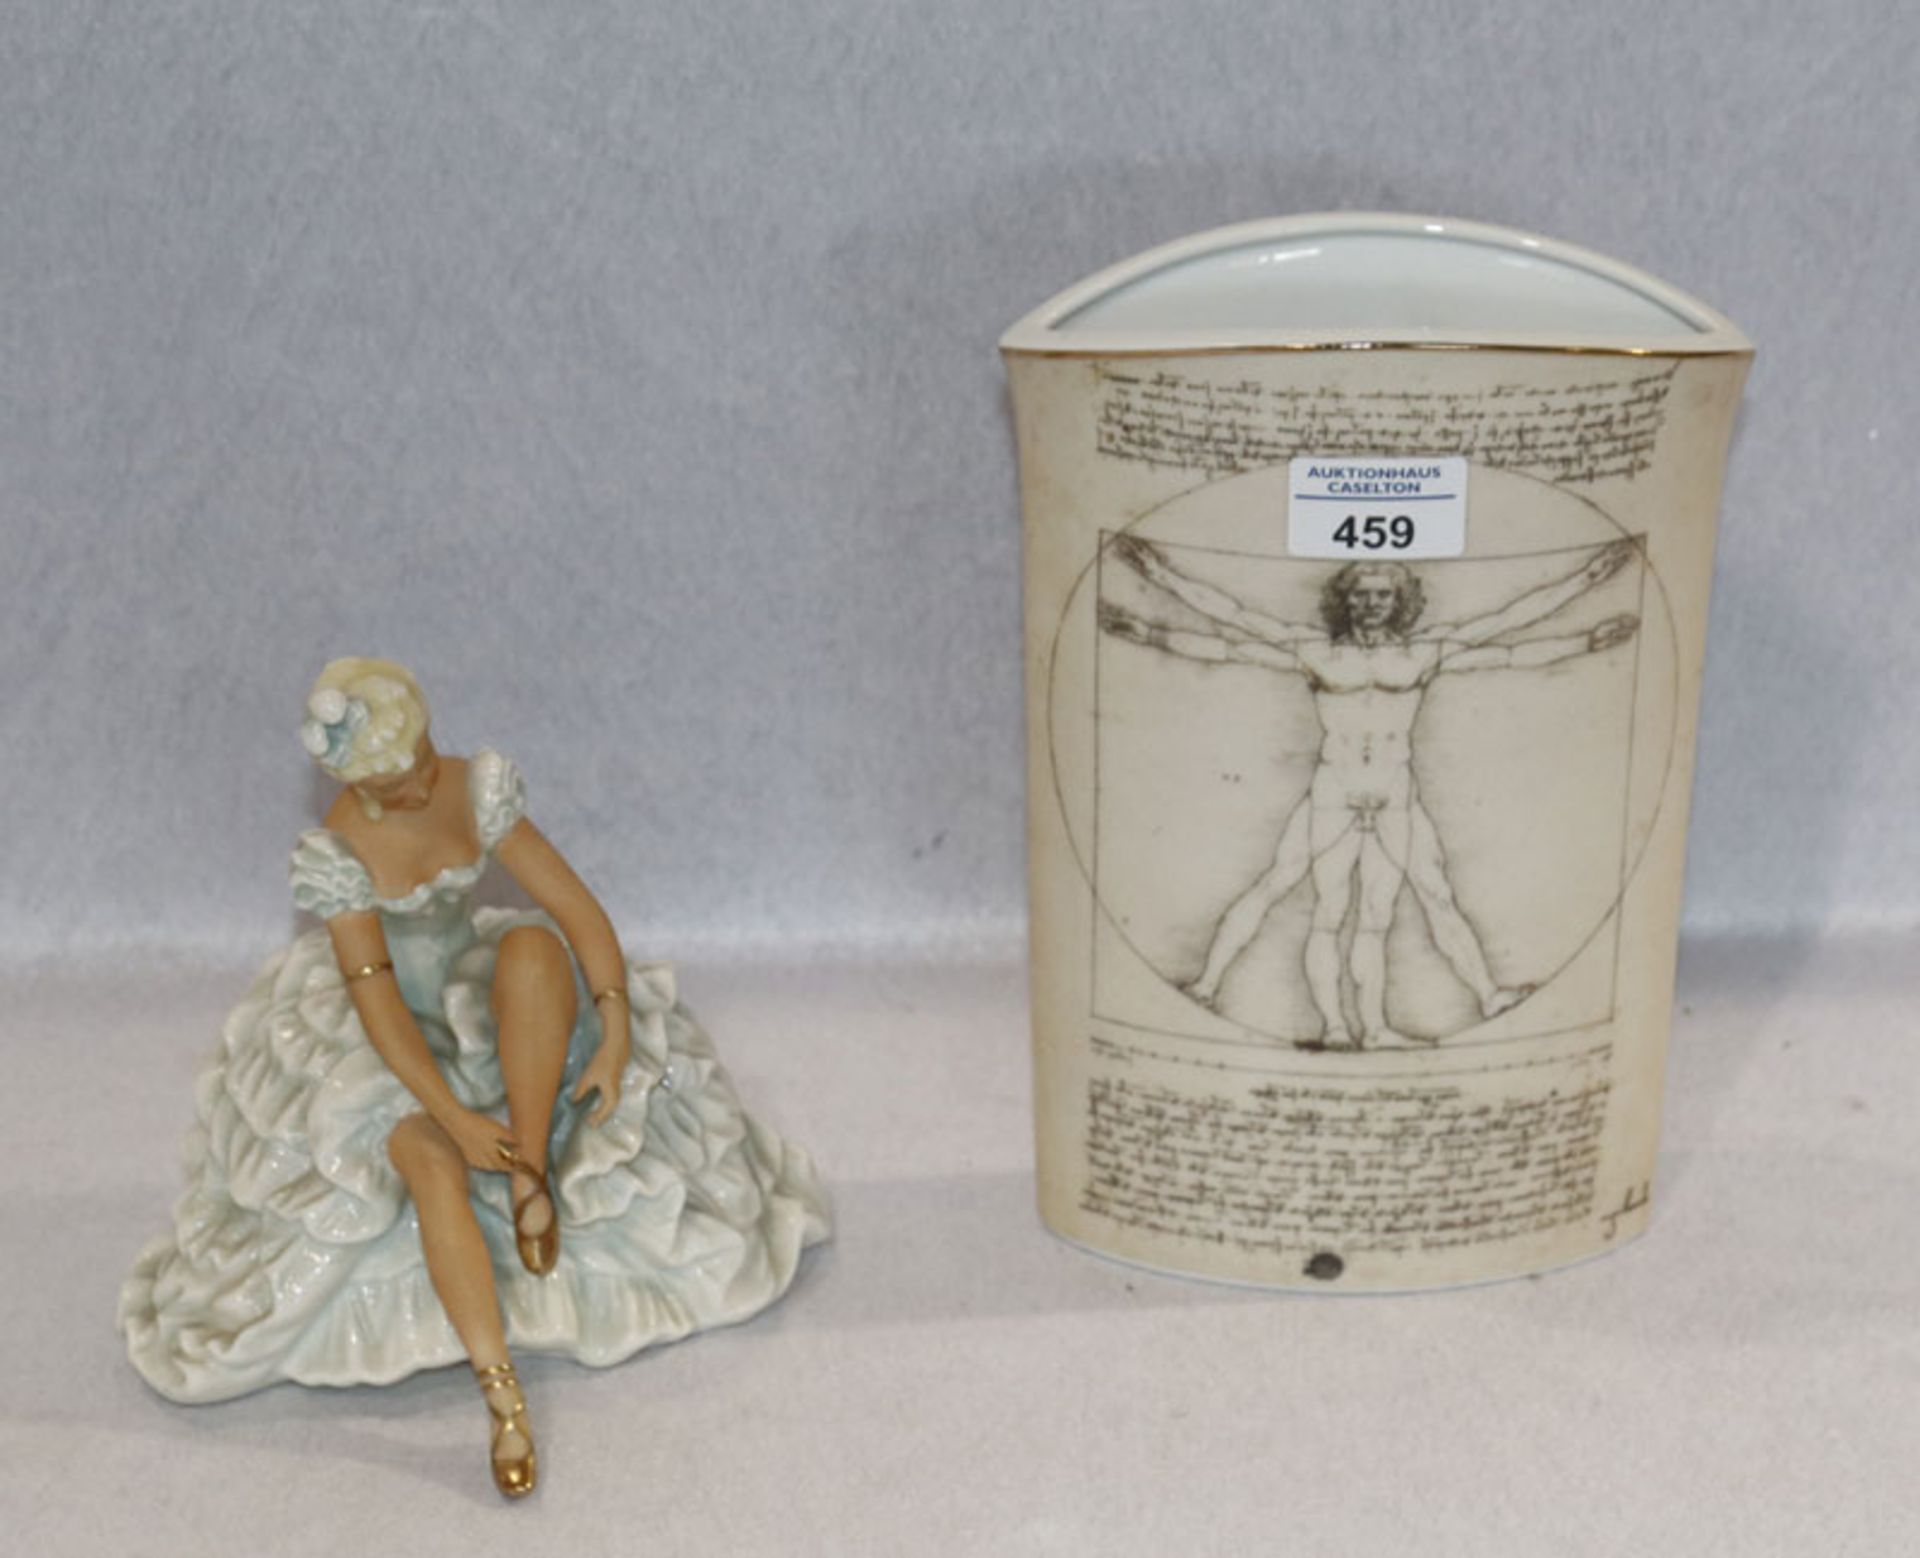 Schaubach Kunst Porzellanfigur 'Tänzerin', H 17 cm, und Goebel Blumenvase, L. da Vinci, Nr. 34/3000,